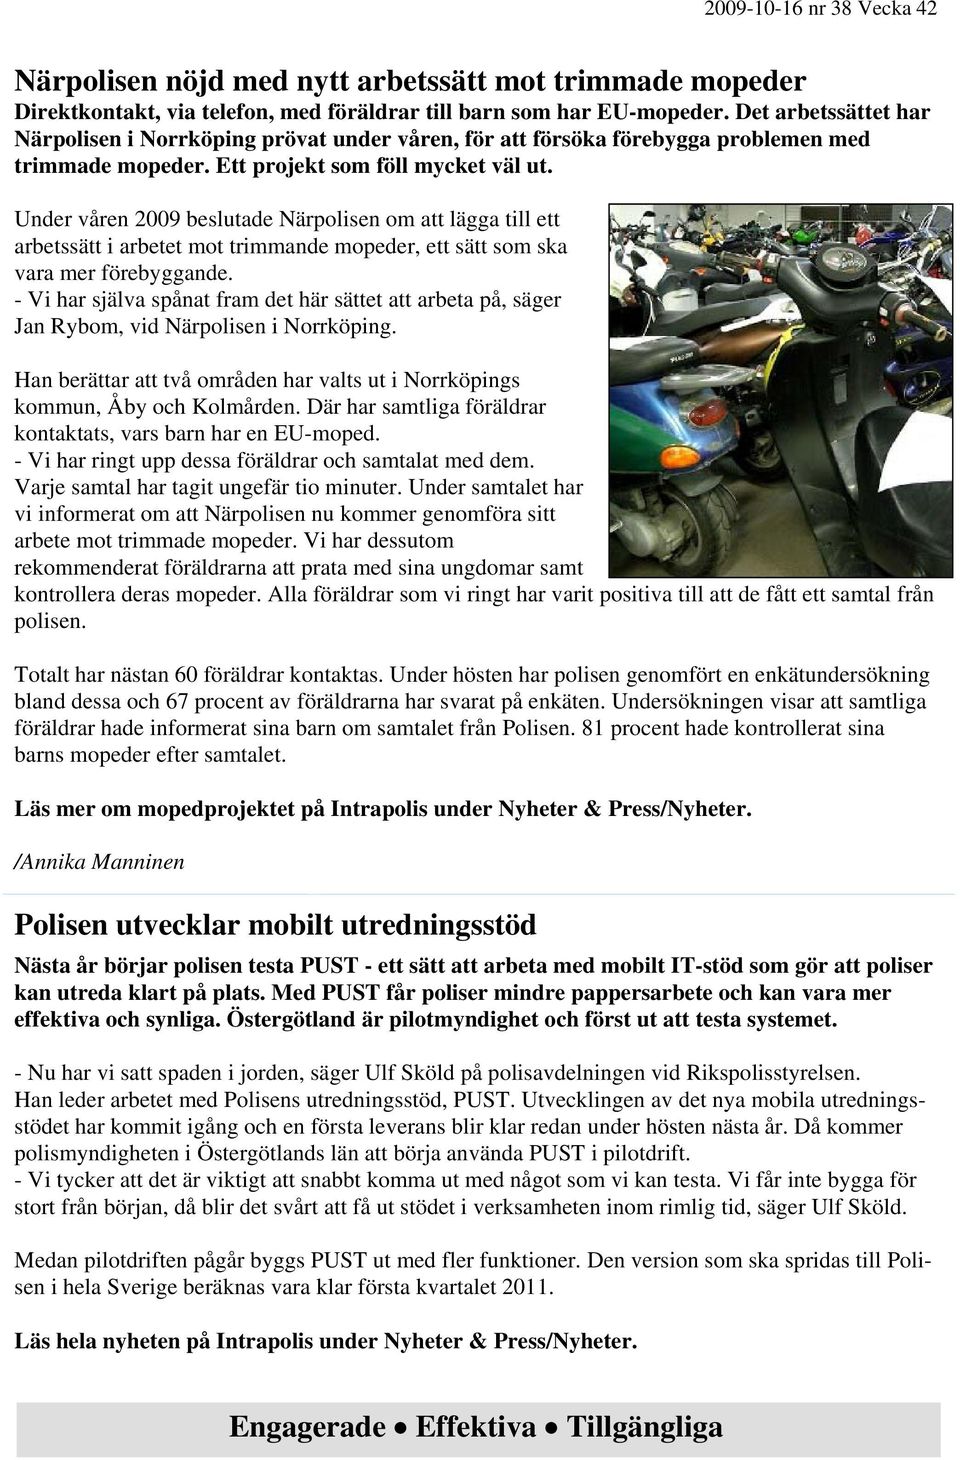 Under våren 2009 beslutade Närpolisen om att lägga till ett arbetssätt i arbetet mot trimmande mopeder, ett sätt som ska vara mer förebyggande.